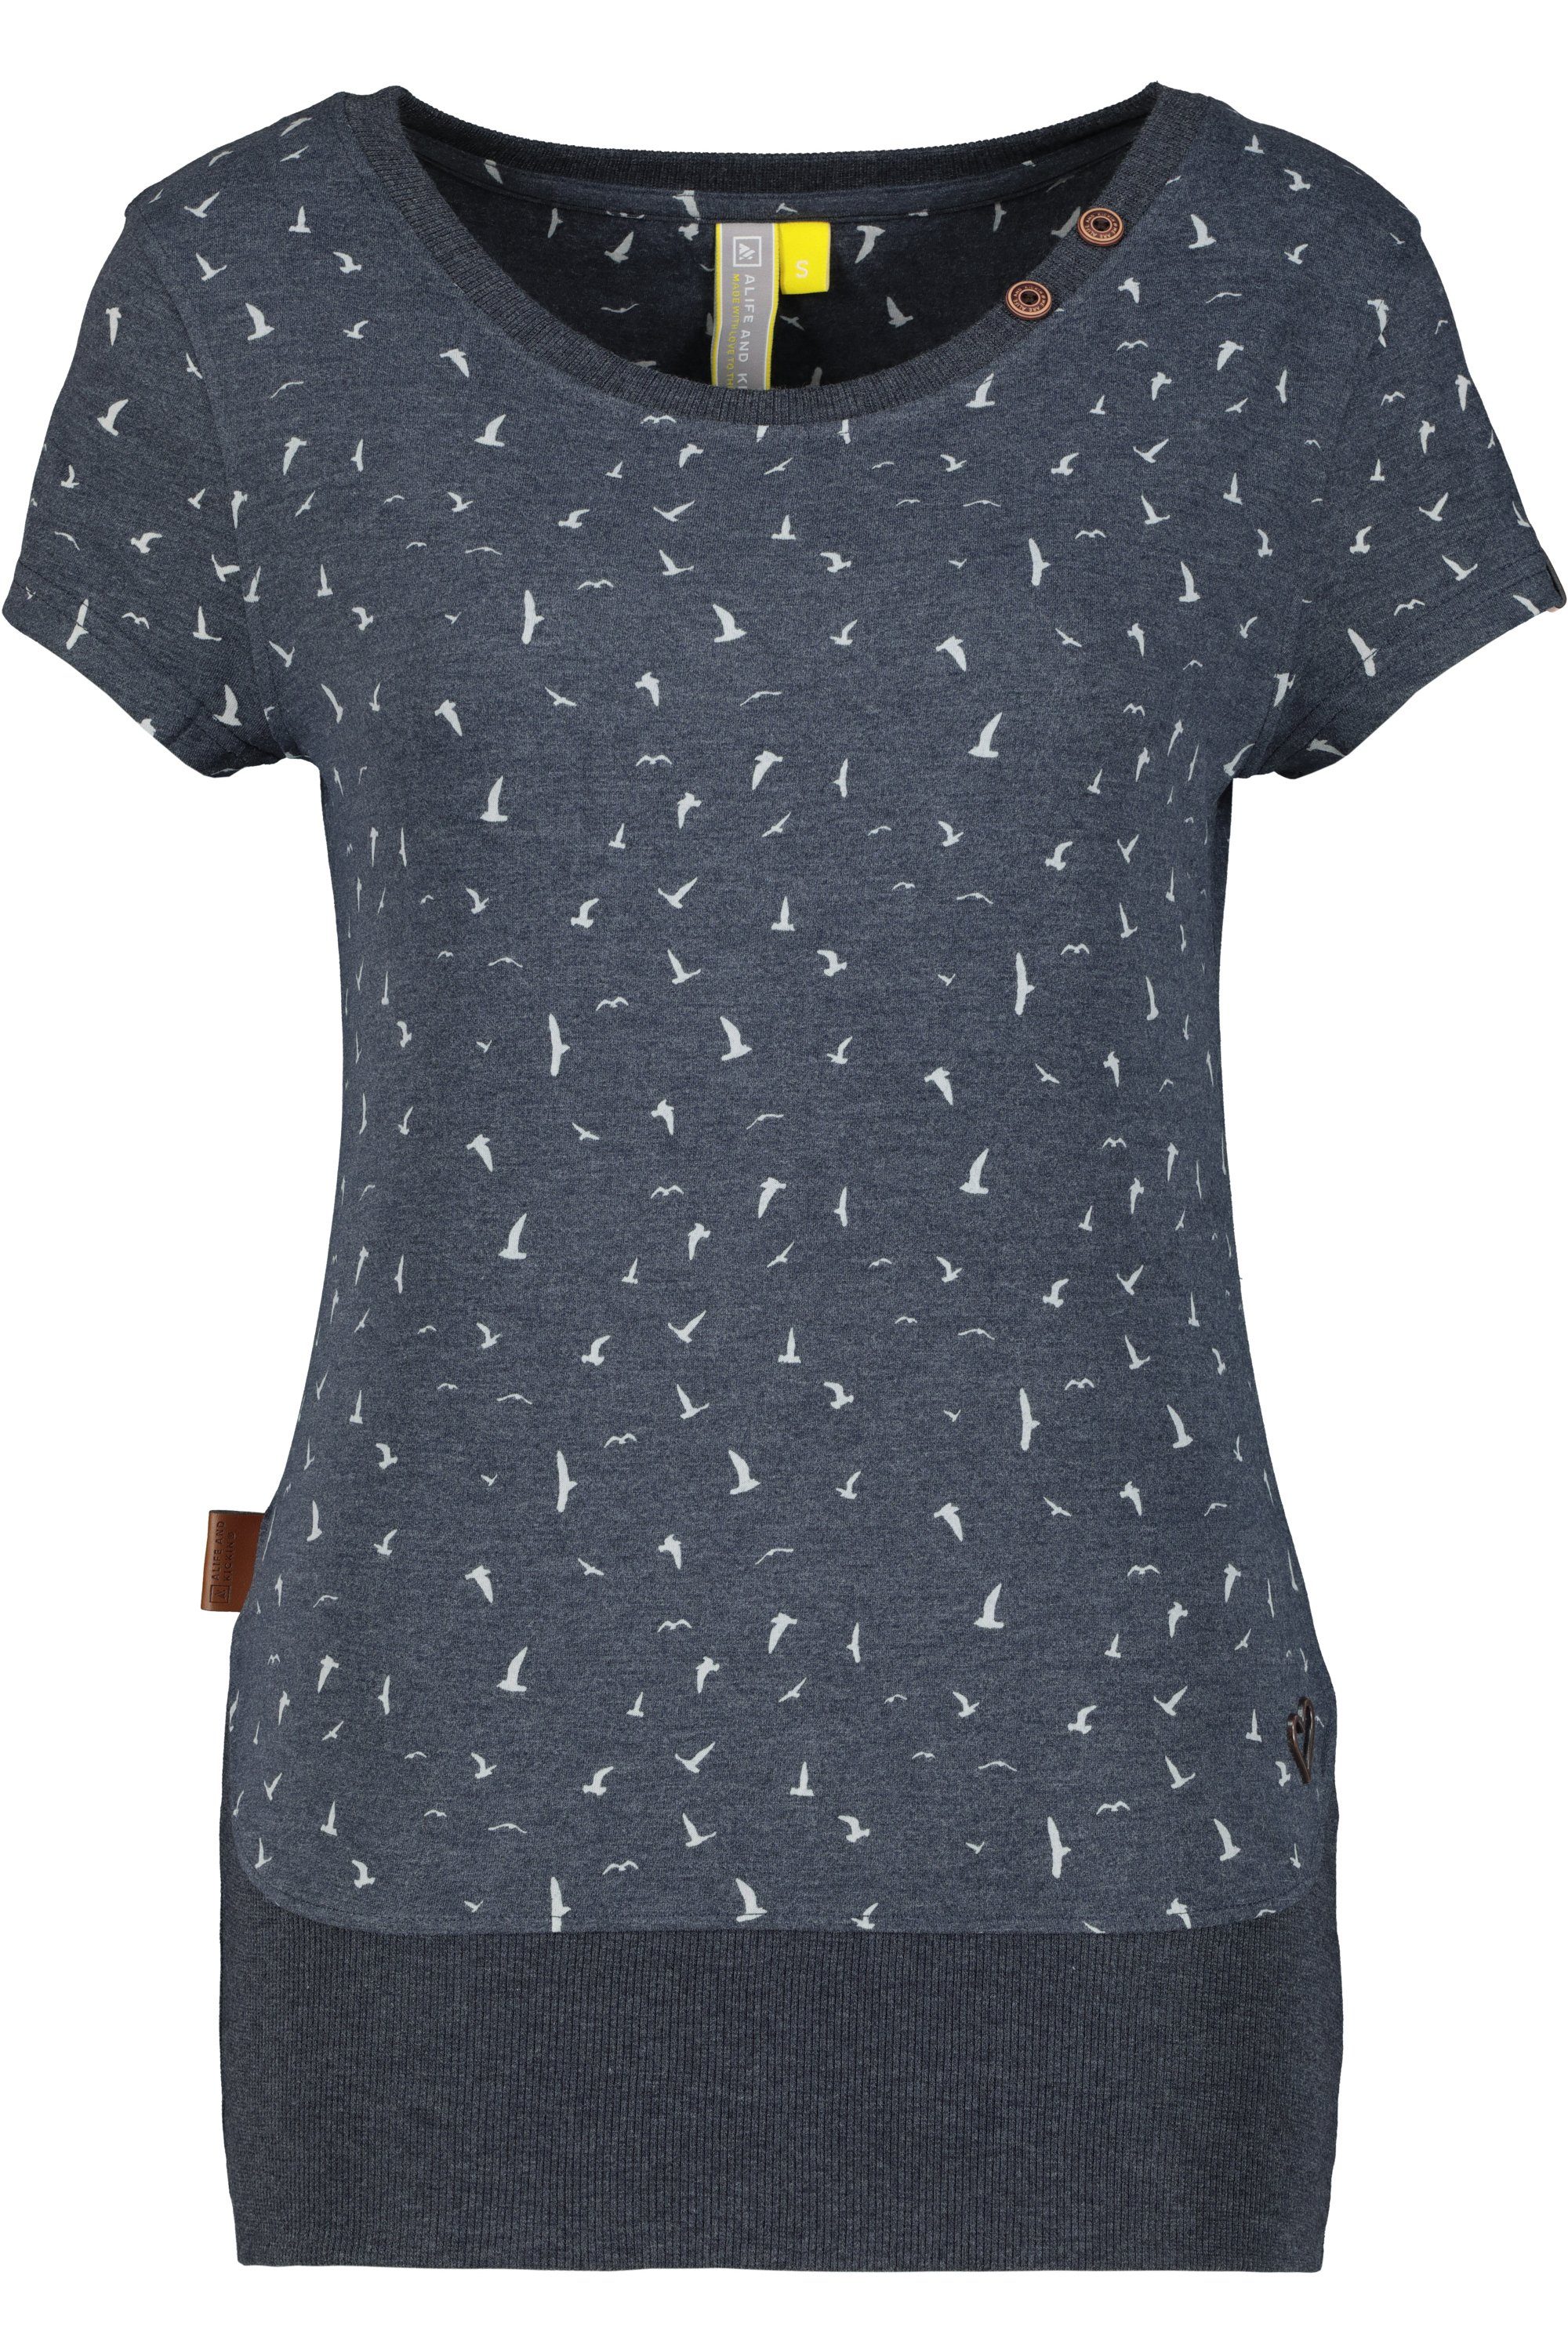 Alife & Damen marine T-Shirt Kickin CocoAK T-Shirt